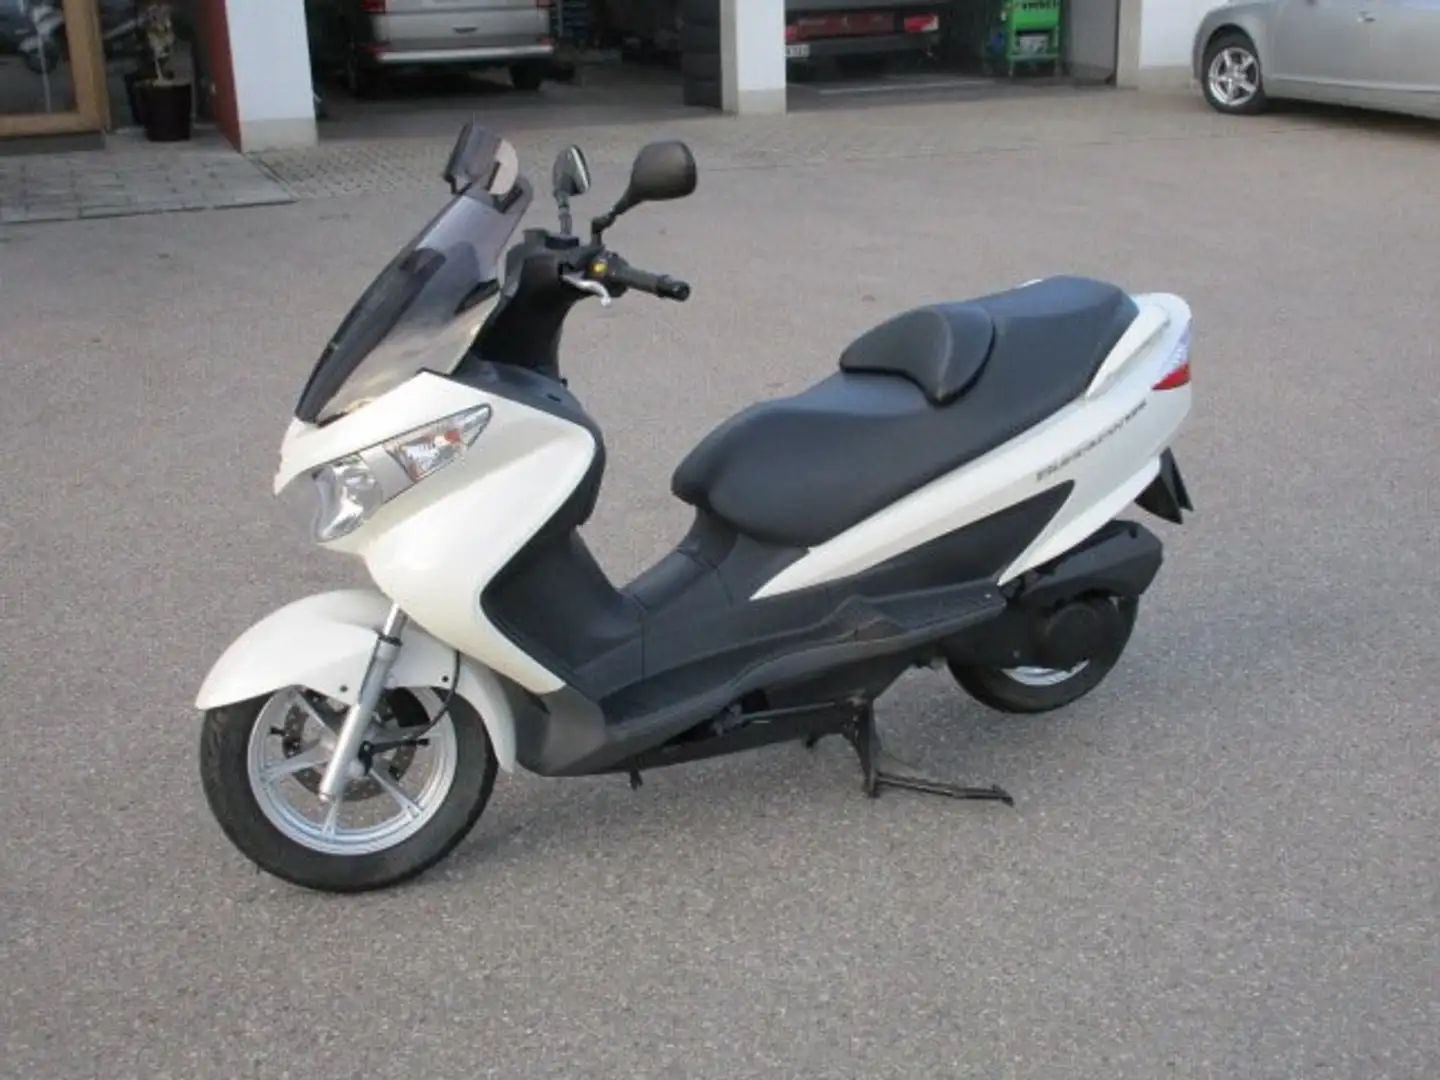 Suzuki Burgman 125 Roller/Scooter in Weiß gebraucht in Tittmoning für €  1.999,-